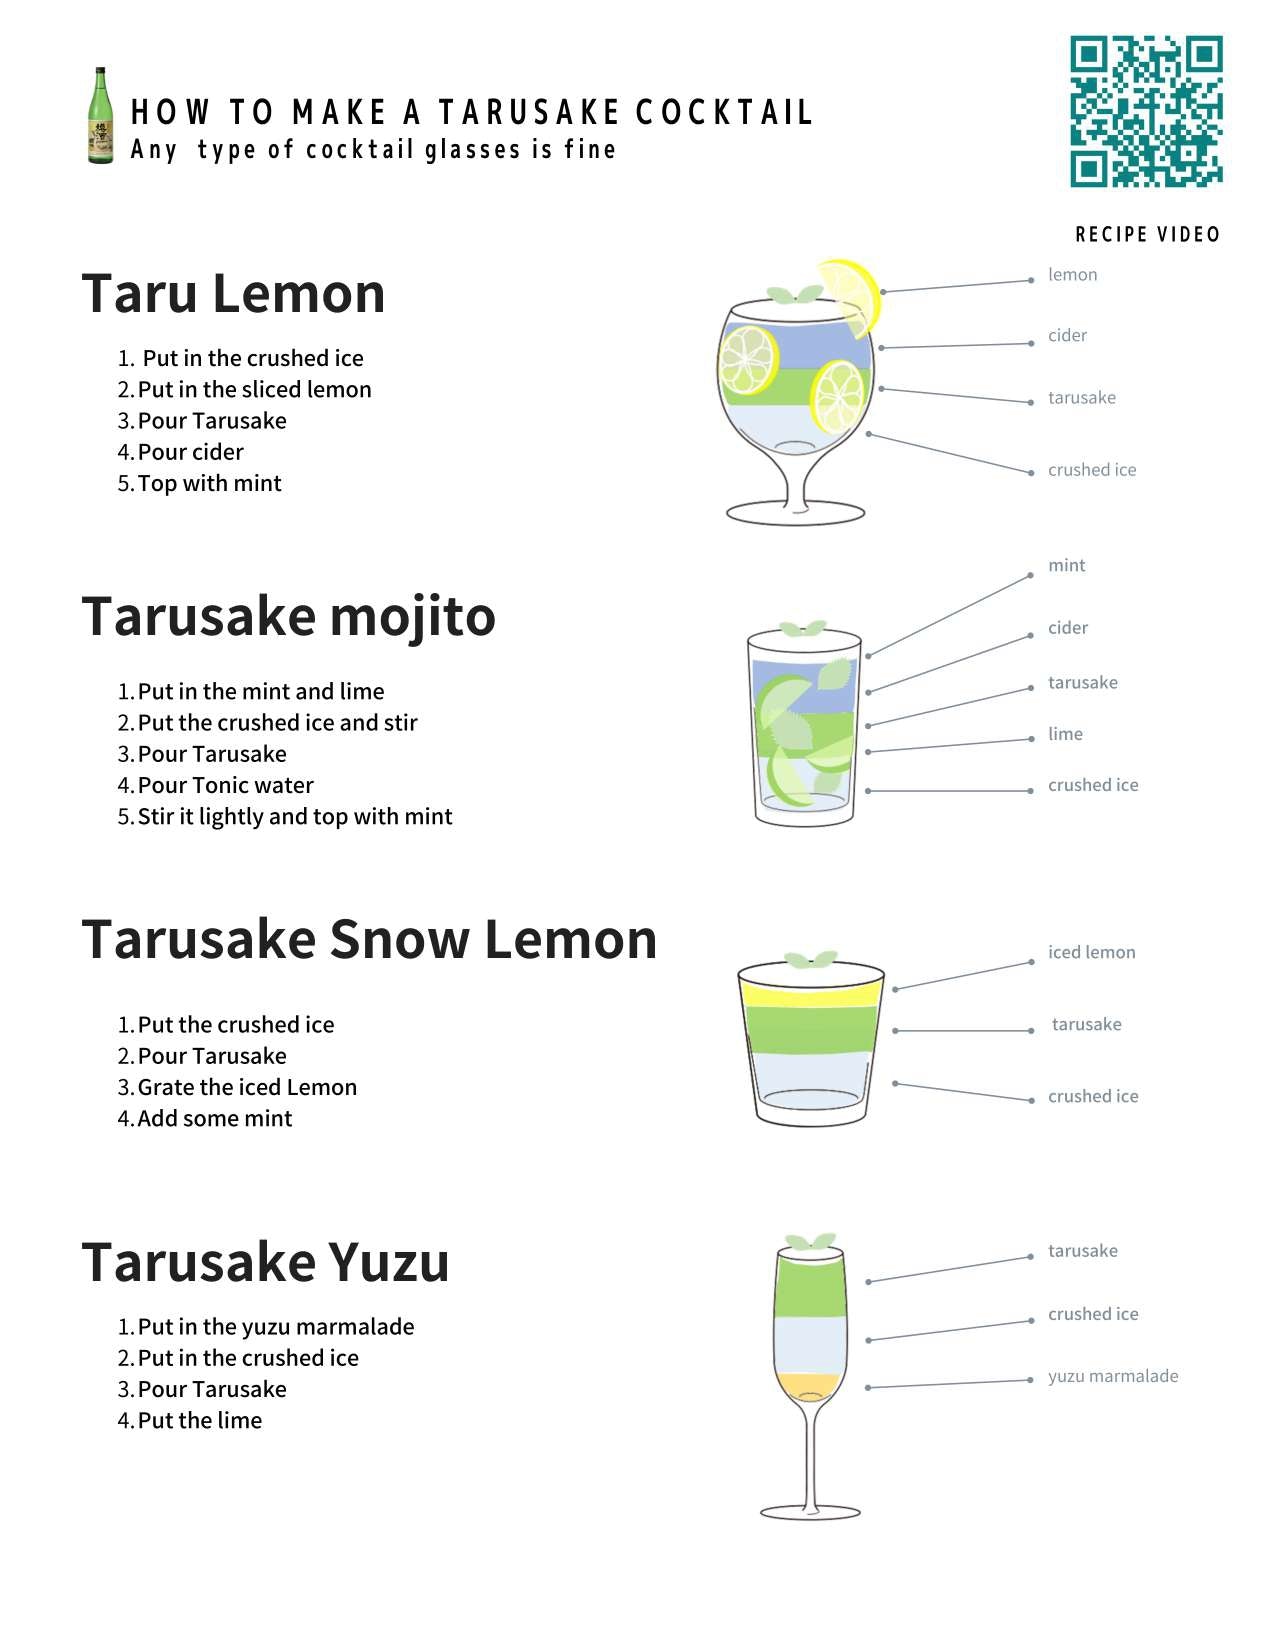 Choryu Yoshinosugi Tarusake 樽酒